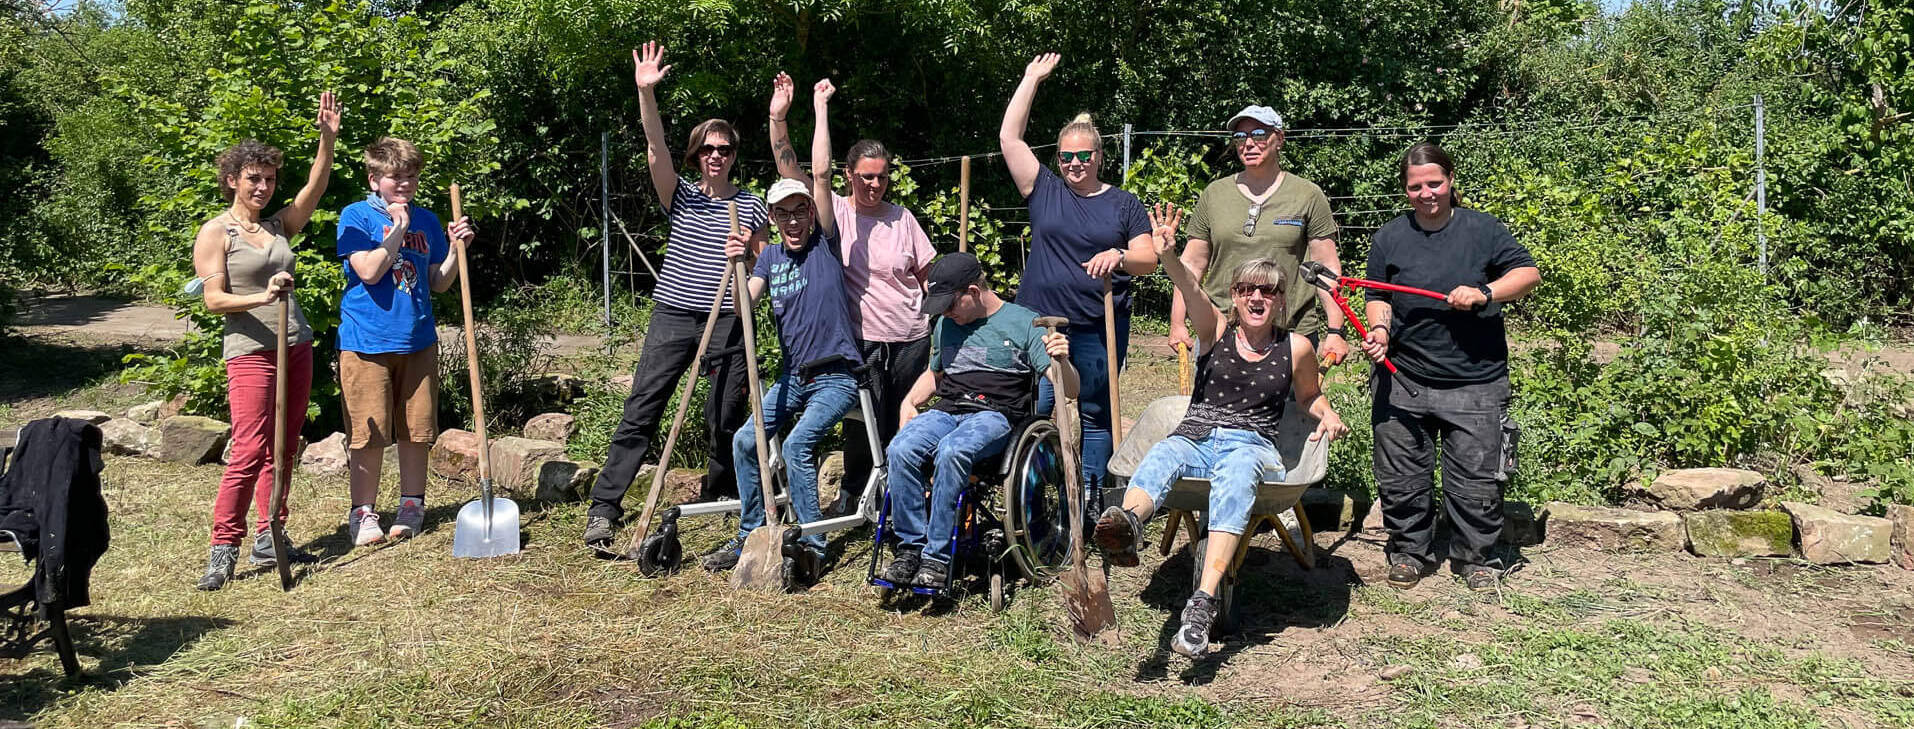 Gartenarbeit, mit einer Gruppe von glücklichen und arbeitslustigen Menschen.